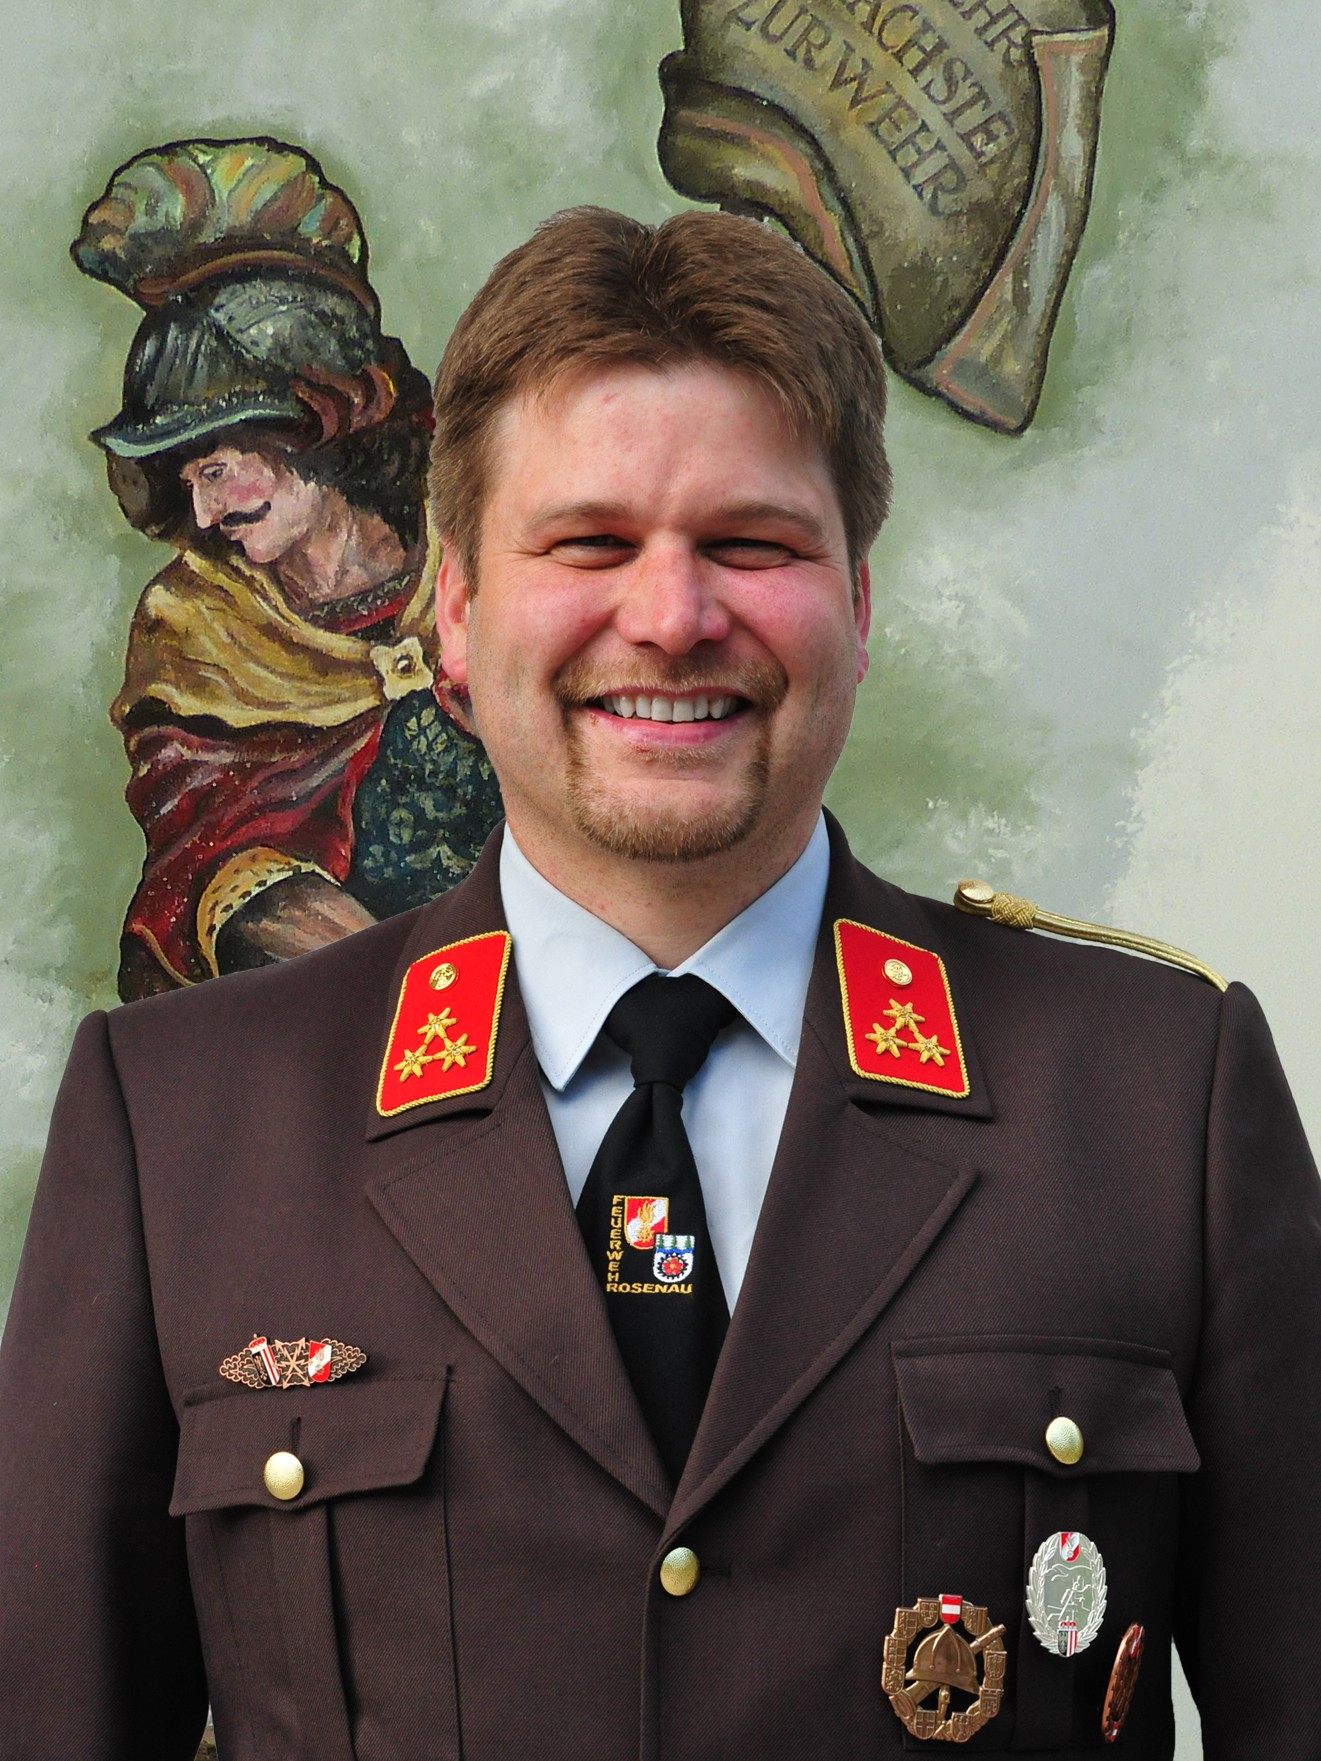 Stefan Reiter